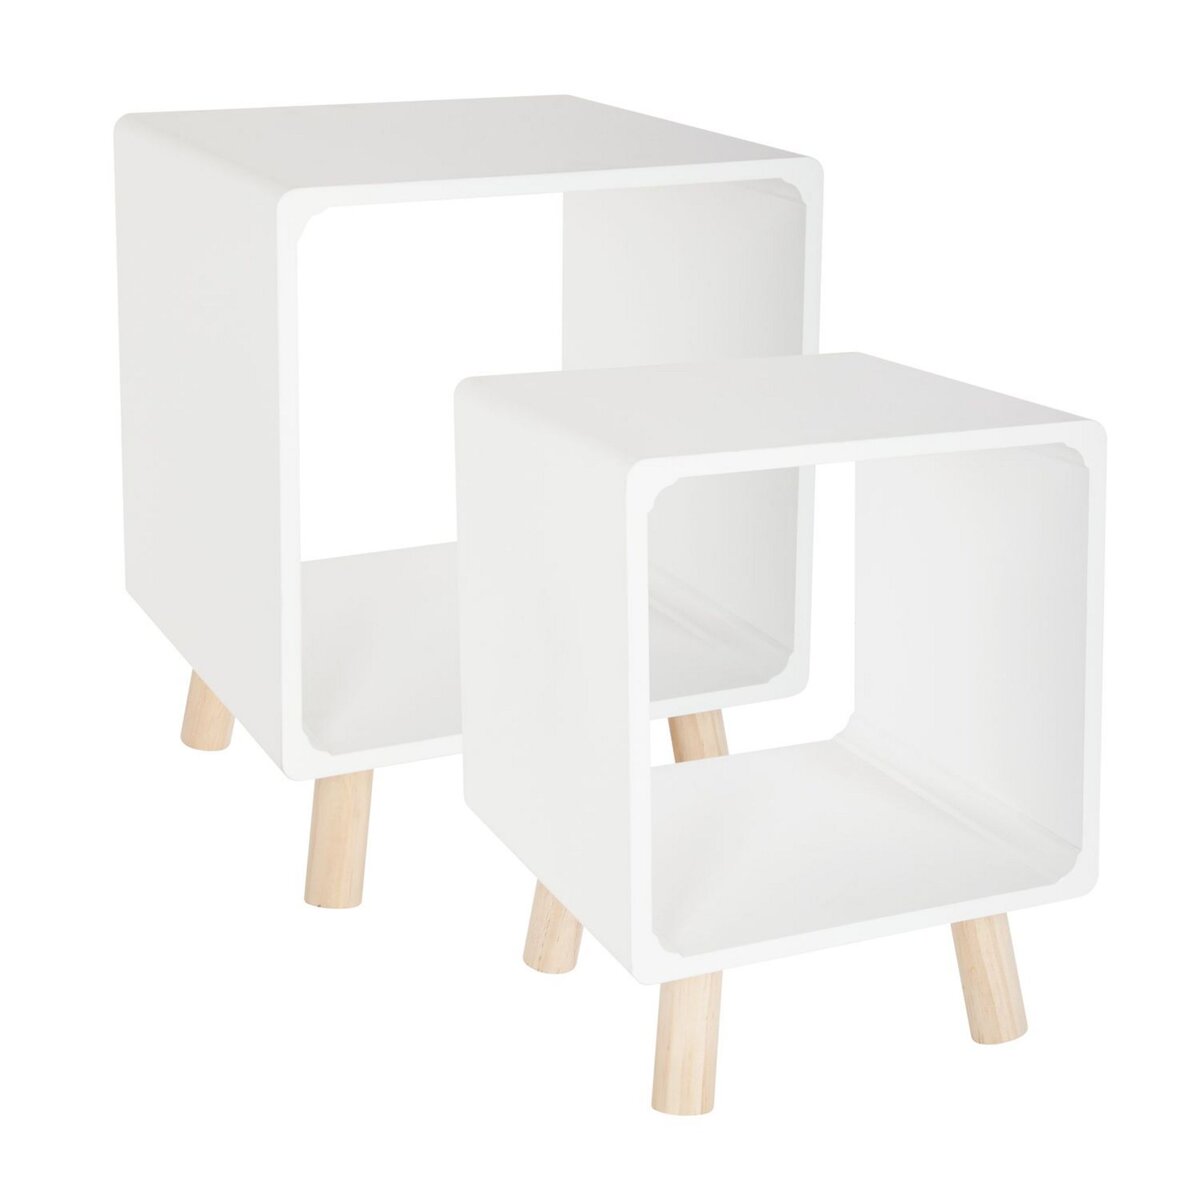 ATMOSPHERA 2 Tables de chevet Moderne - L. 35 x l. 35 cm - Blanc